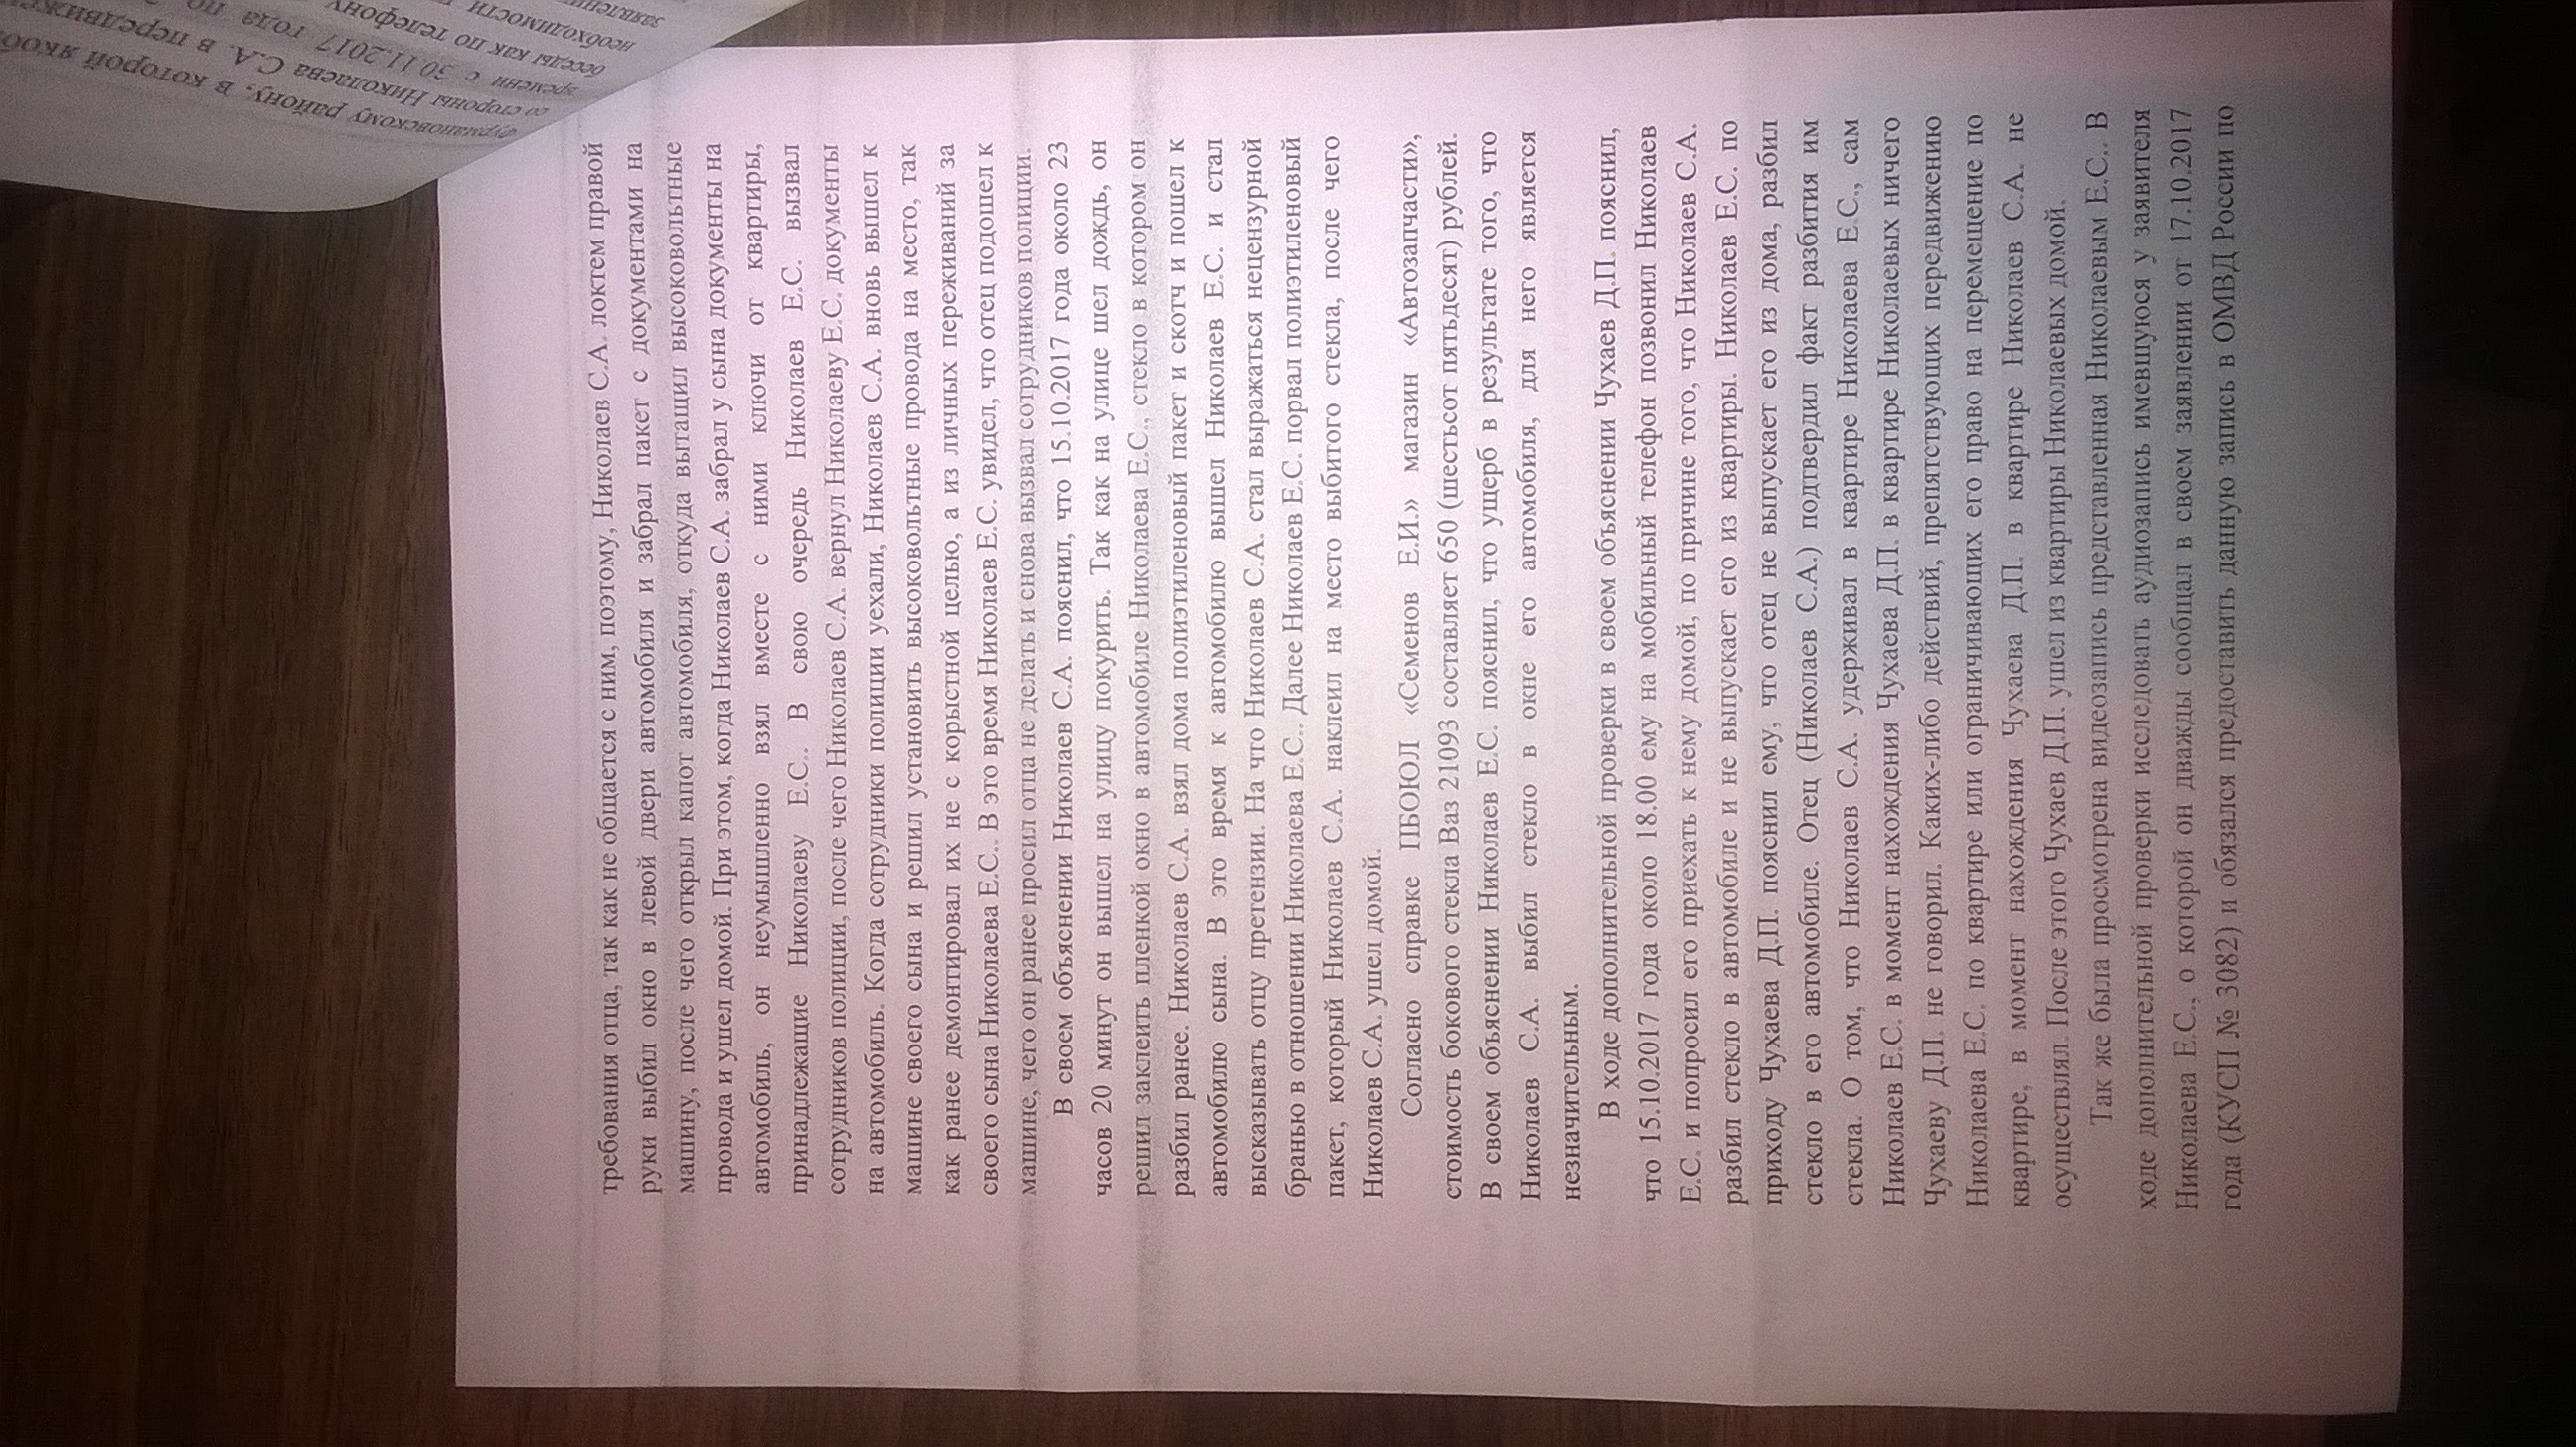 Постановление о отказе в возбуждении уголовного дела ОМВД по Фурмановскому району(ID документа 111) (Дата документа 25.12.2017) Страница 2